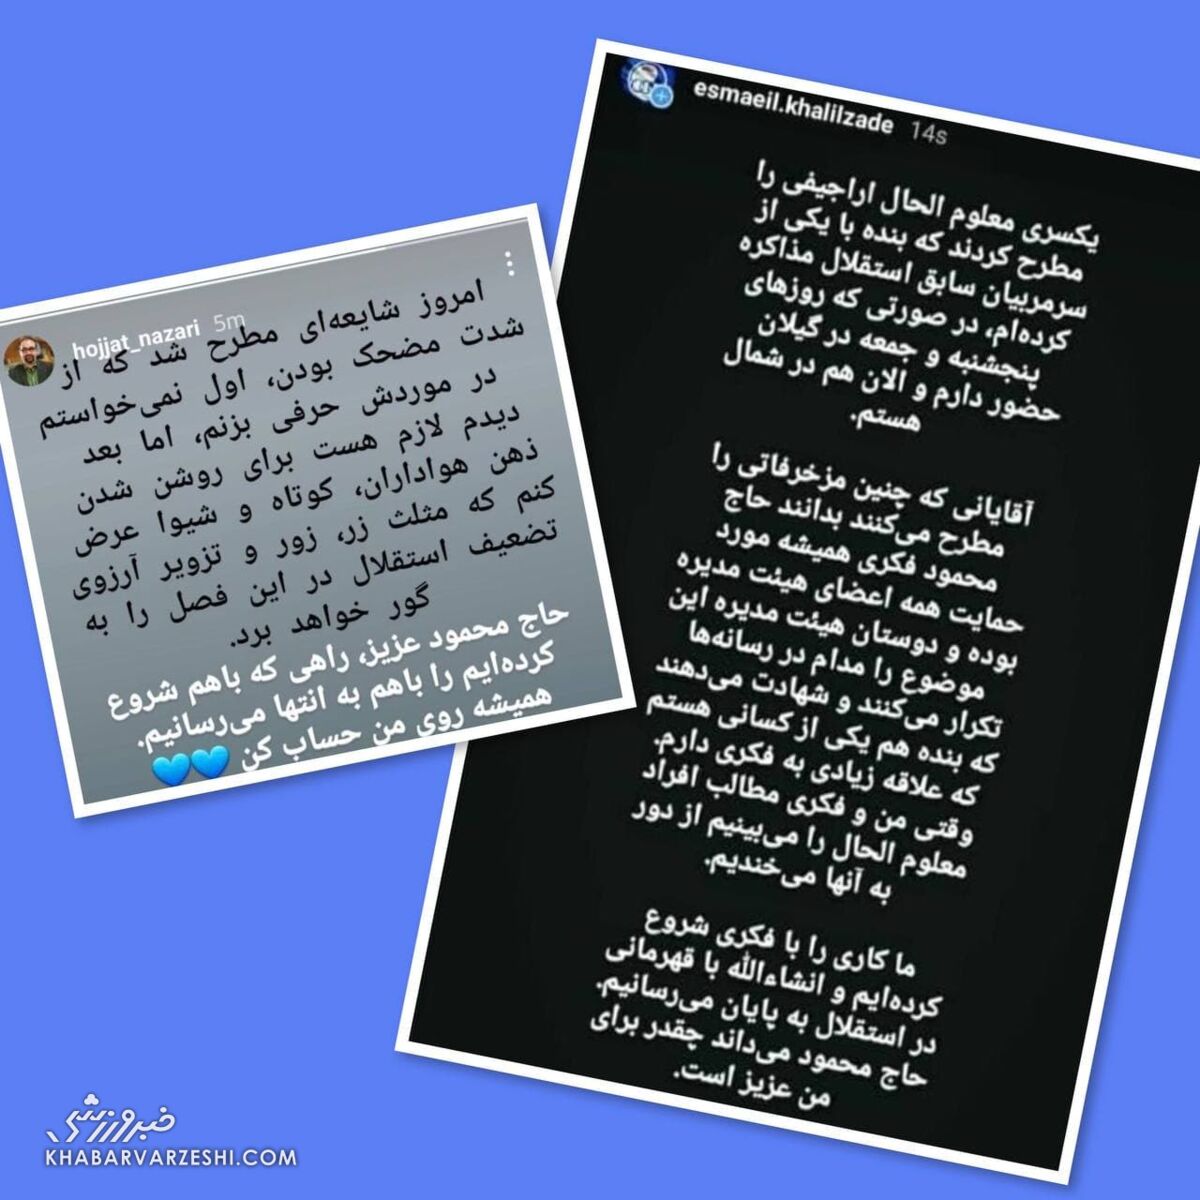 وضعیت تیم استقلال اخبار فوتبال داخلی اخبار استقلال تهران (آخرین و جدیدترین خبرها)